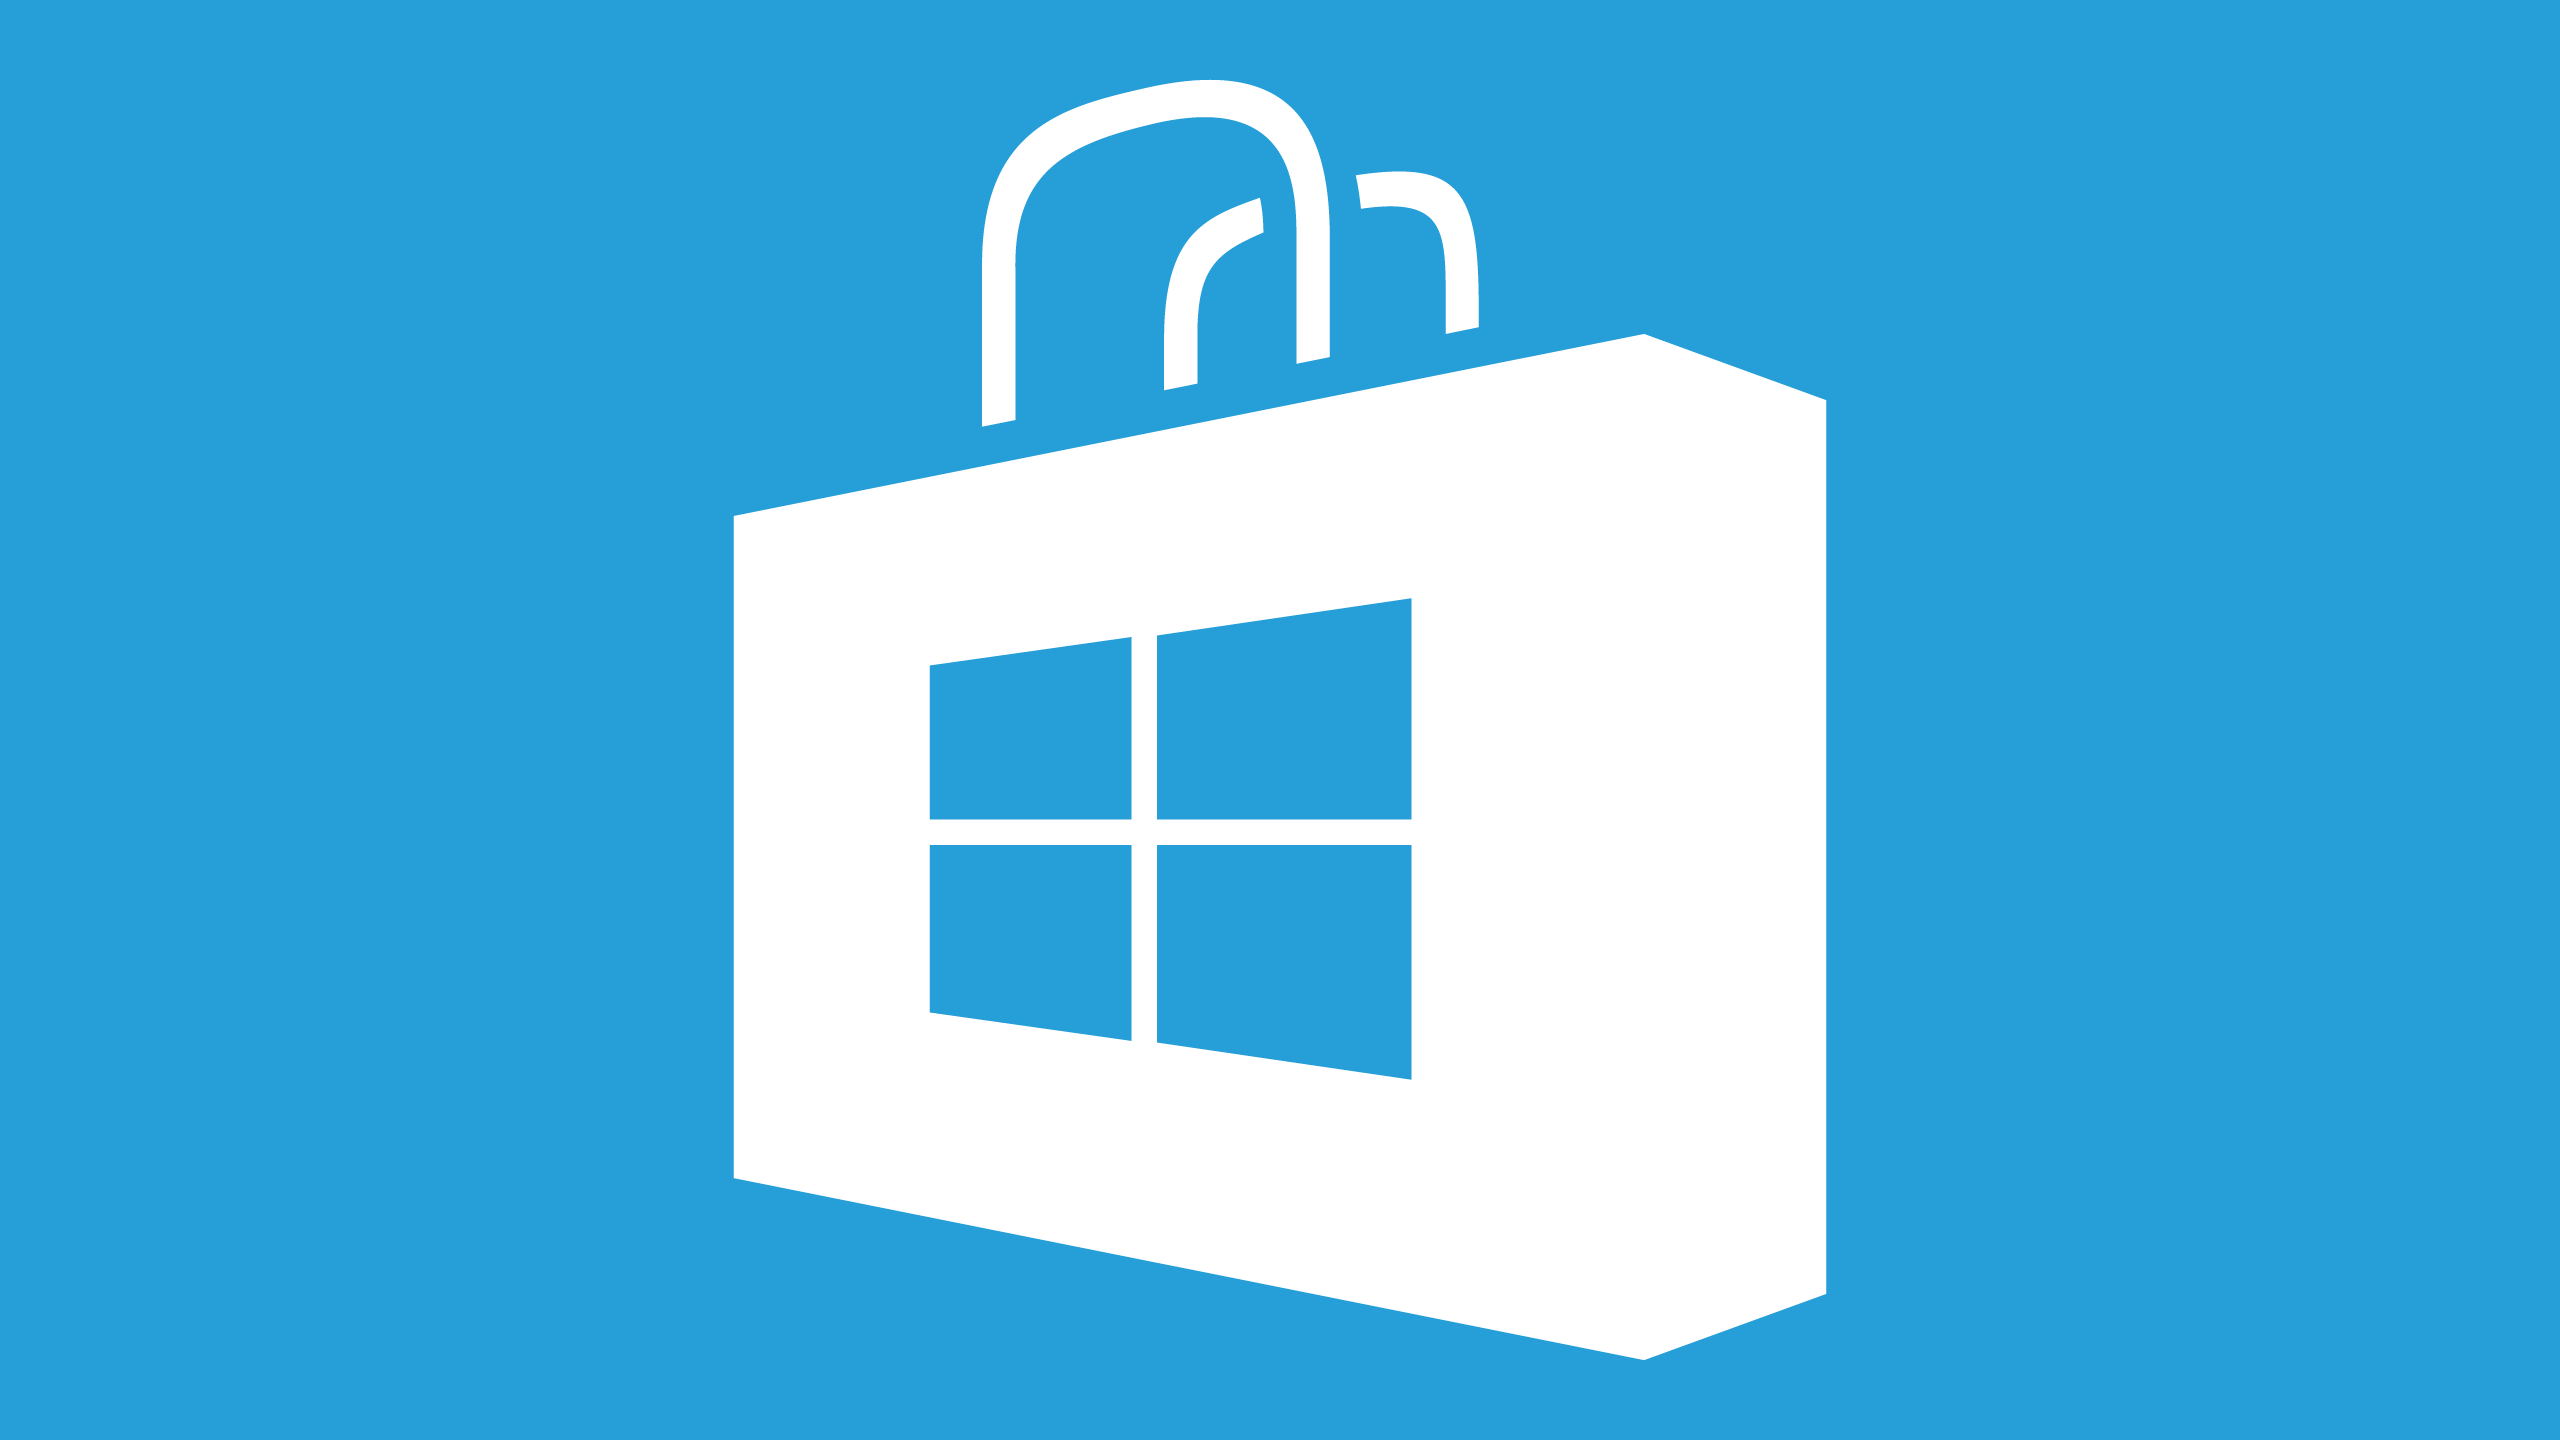 Microsoft App Store Logo - Microsoft app store Logos